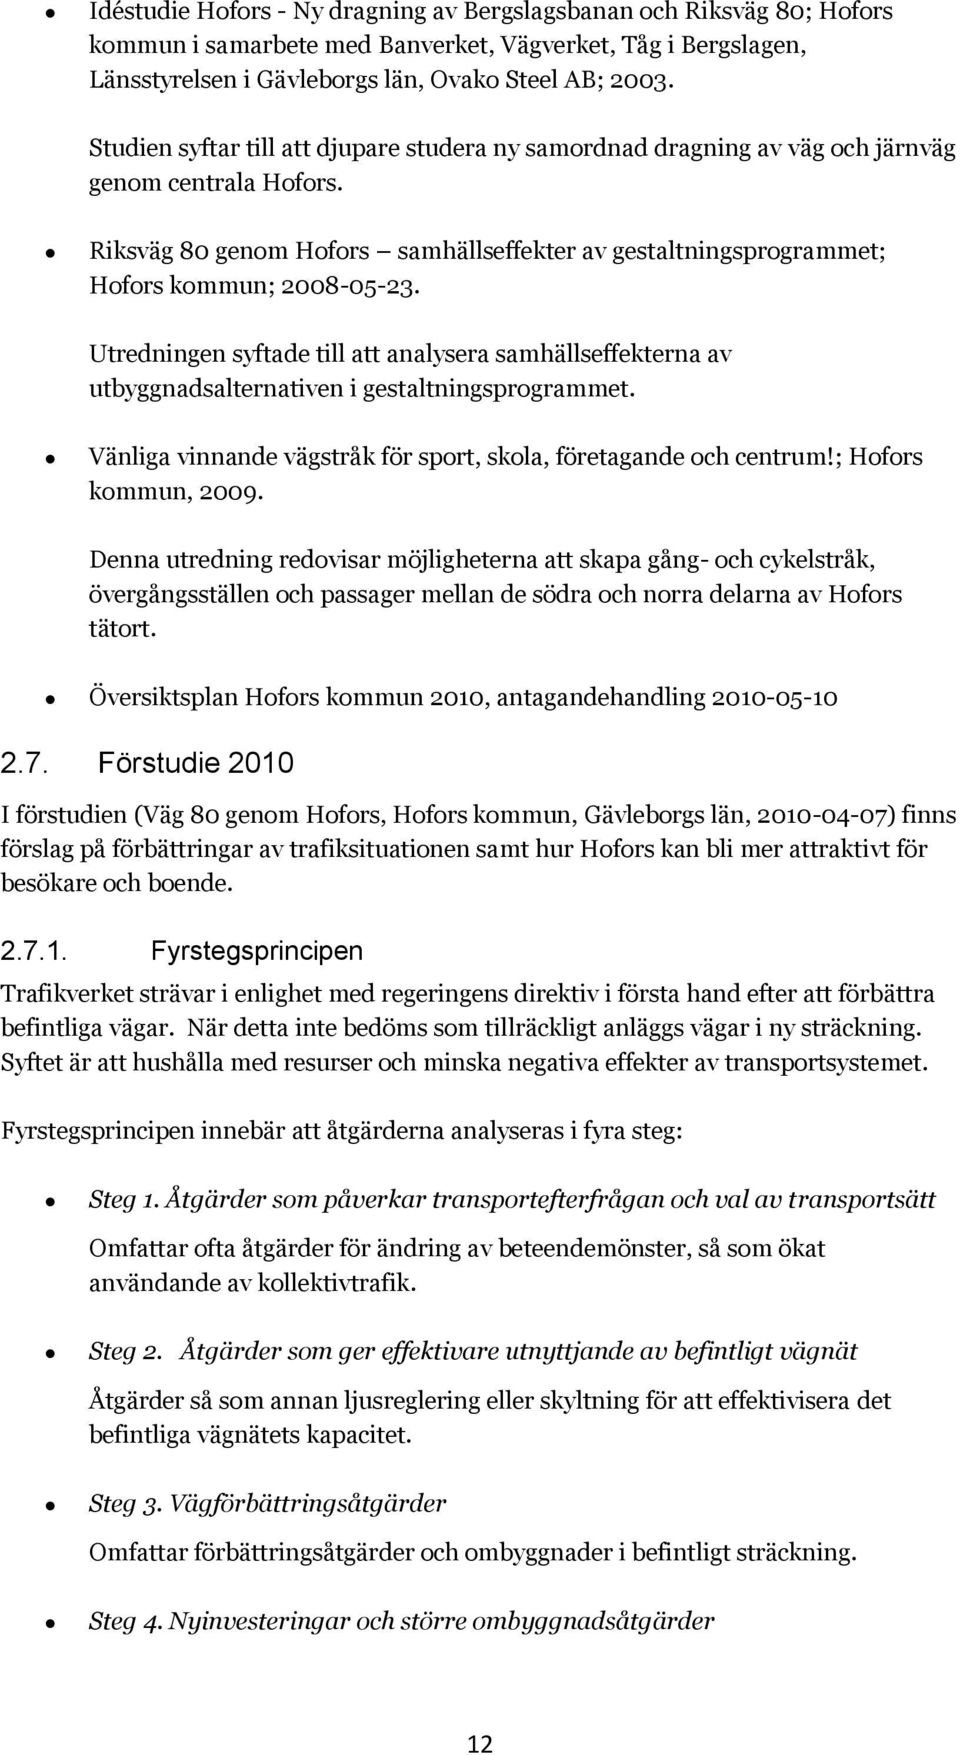 Utredningen syftade till att analysera samhällseffekterna av utbyggnadsalternativen i gestaltningsprogrammet. Vänliga vinnande vägstråk för sport, skola, företagande och centrum!; Hofors kommun, 2009.